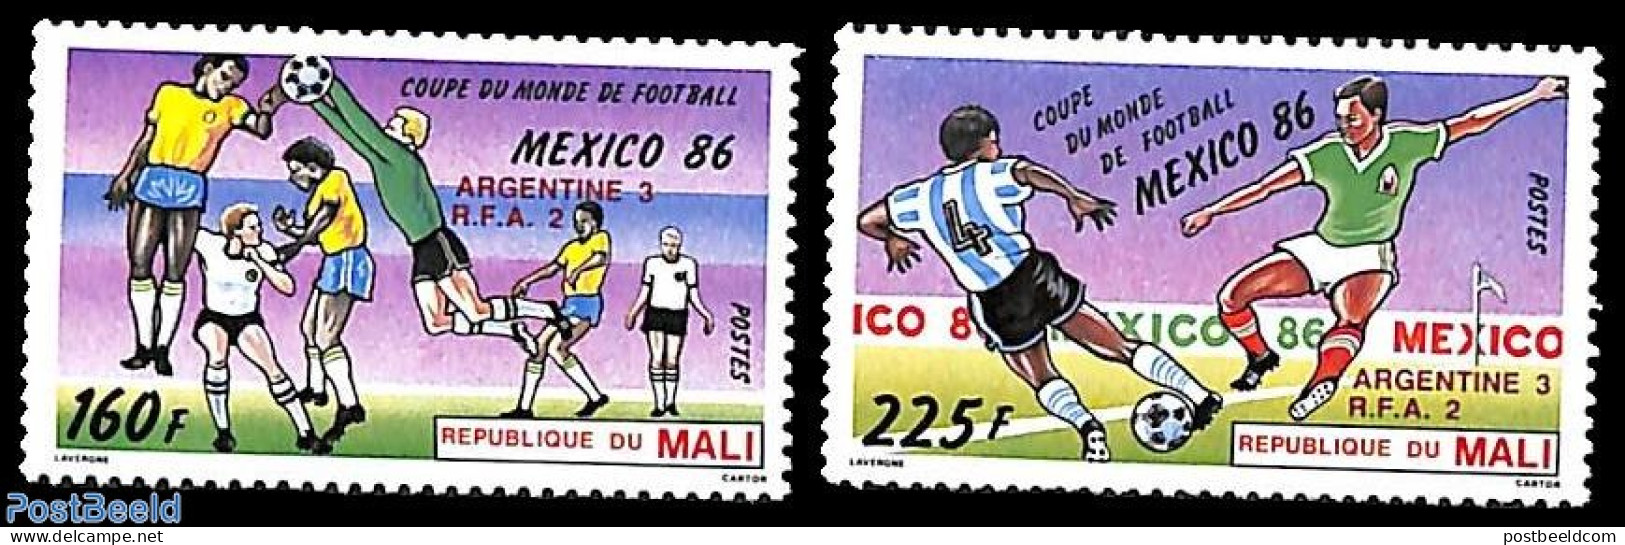 Mali 1986 Football Winners 2v, Mint NH, Sport - Football - Mali (1959-...)